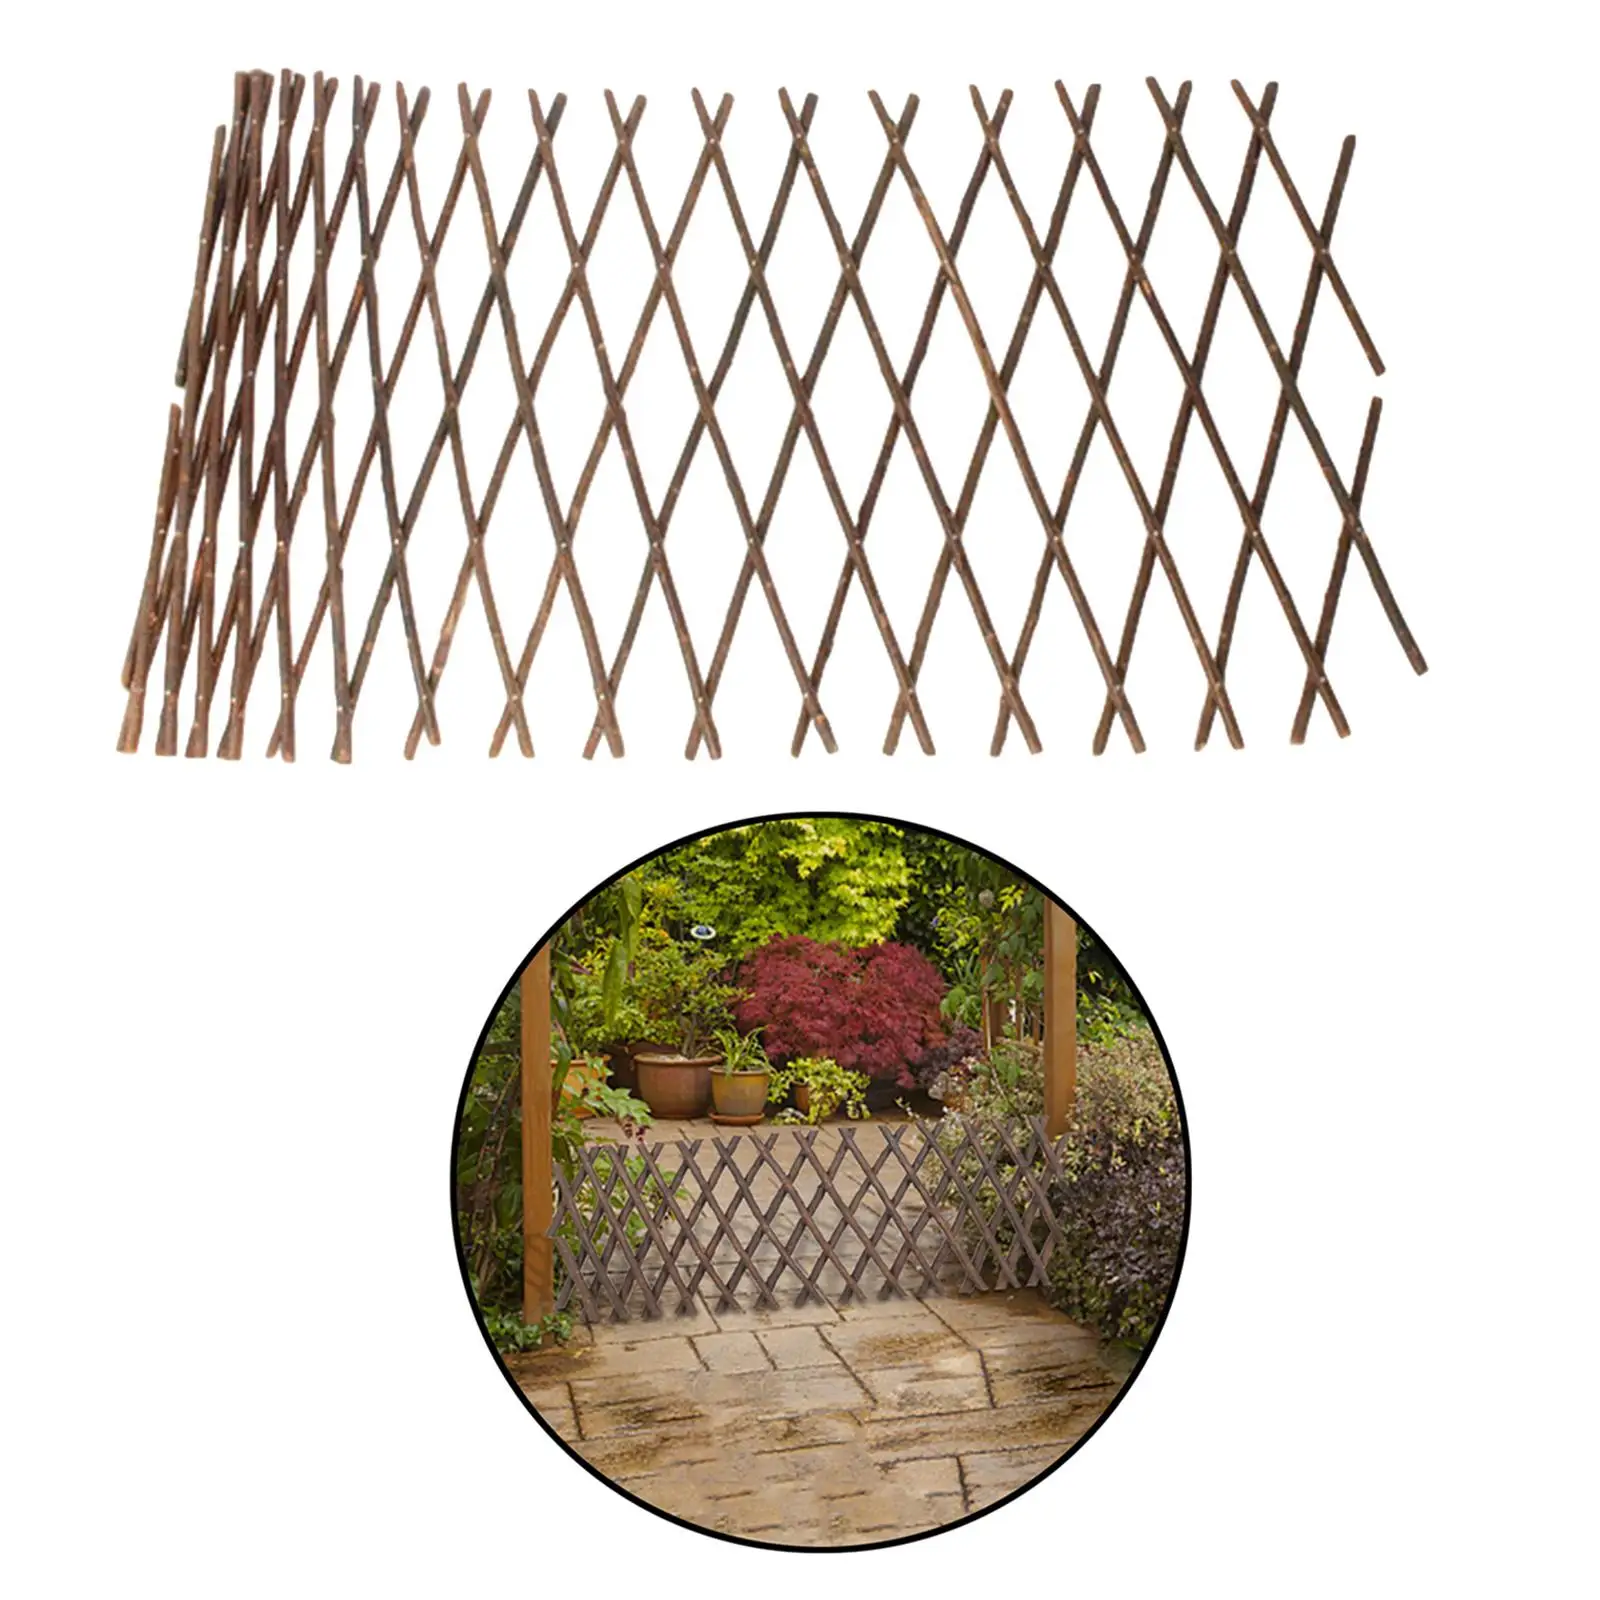 Expandable Wooden Garden Trellis Retractable Plant Lattice Fence Panel